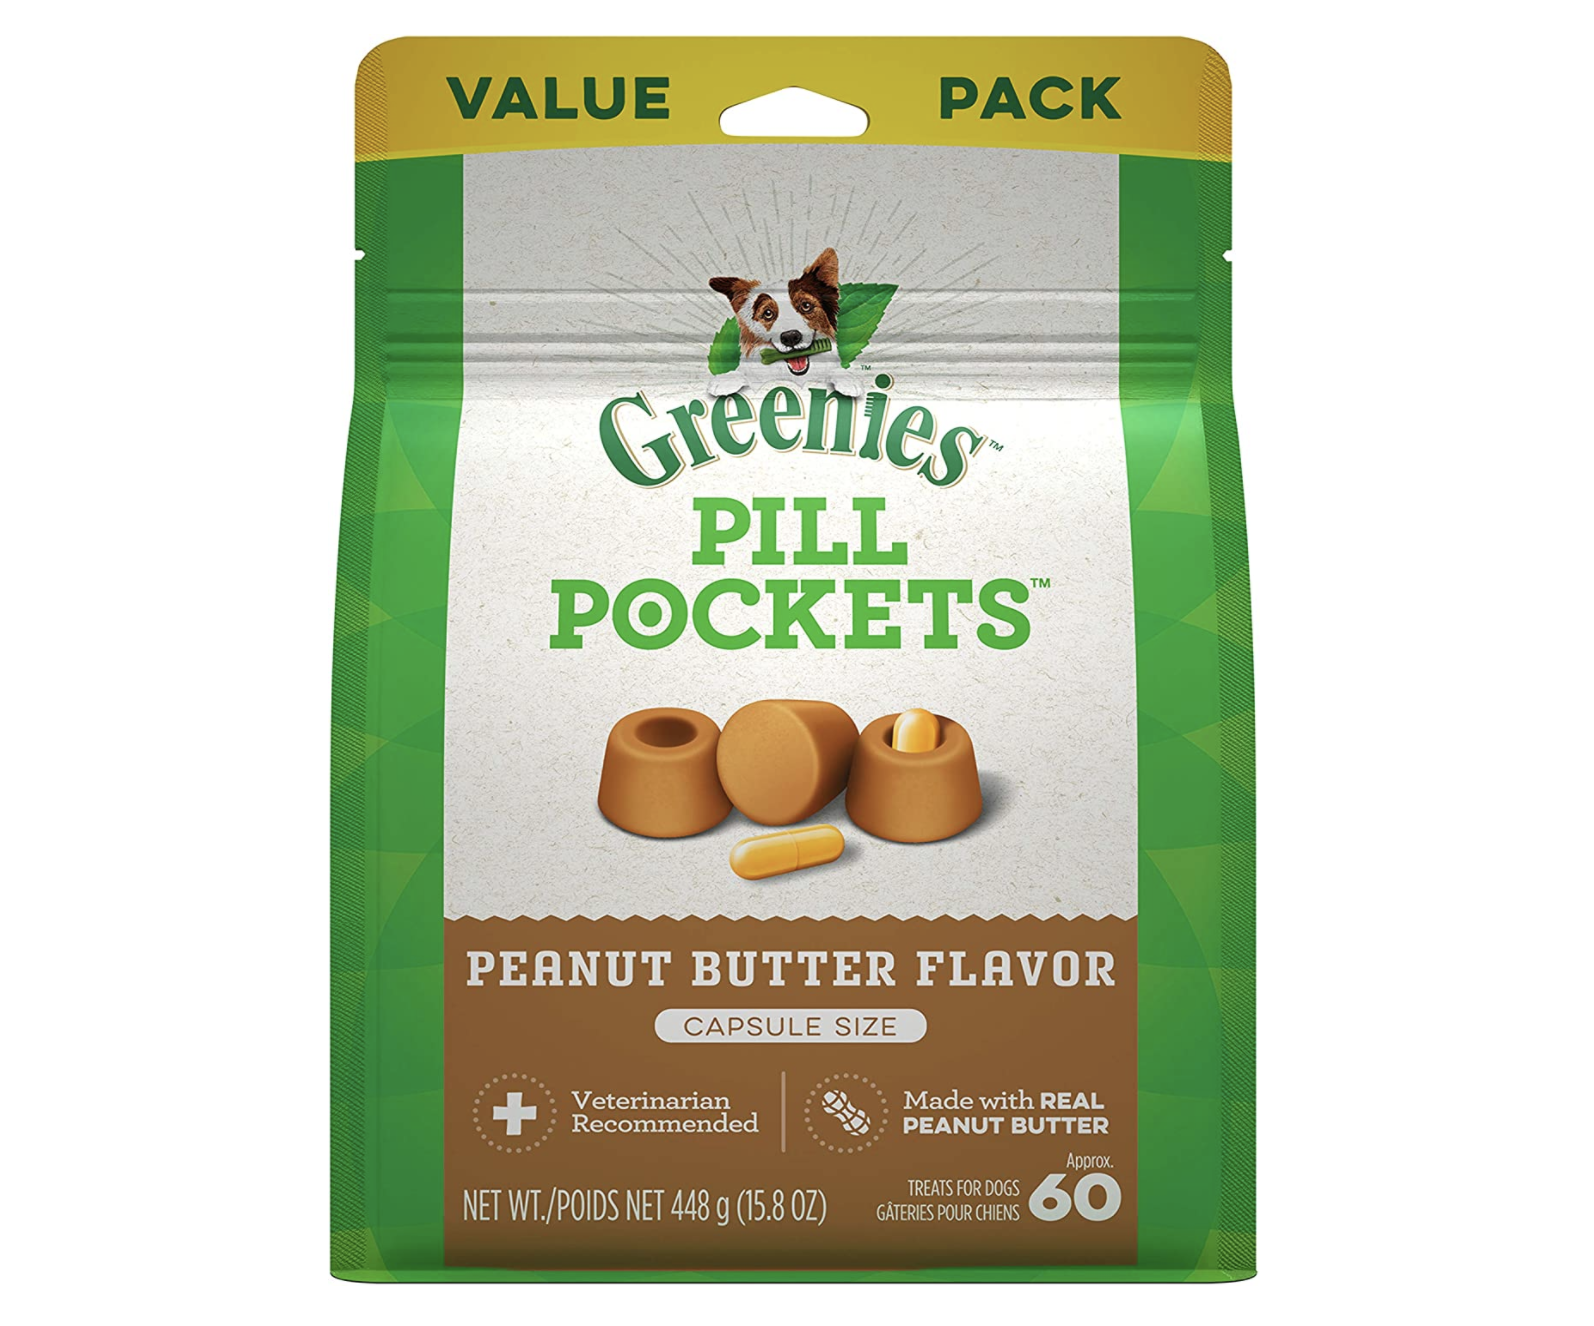 Pill Pockets (PB flavor is best)